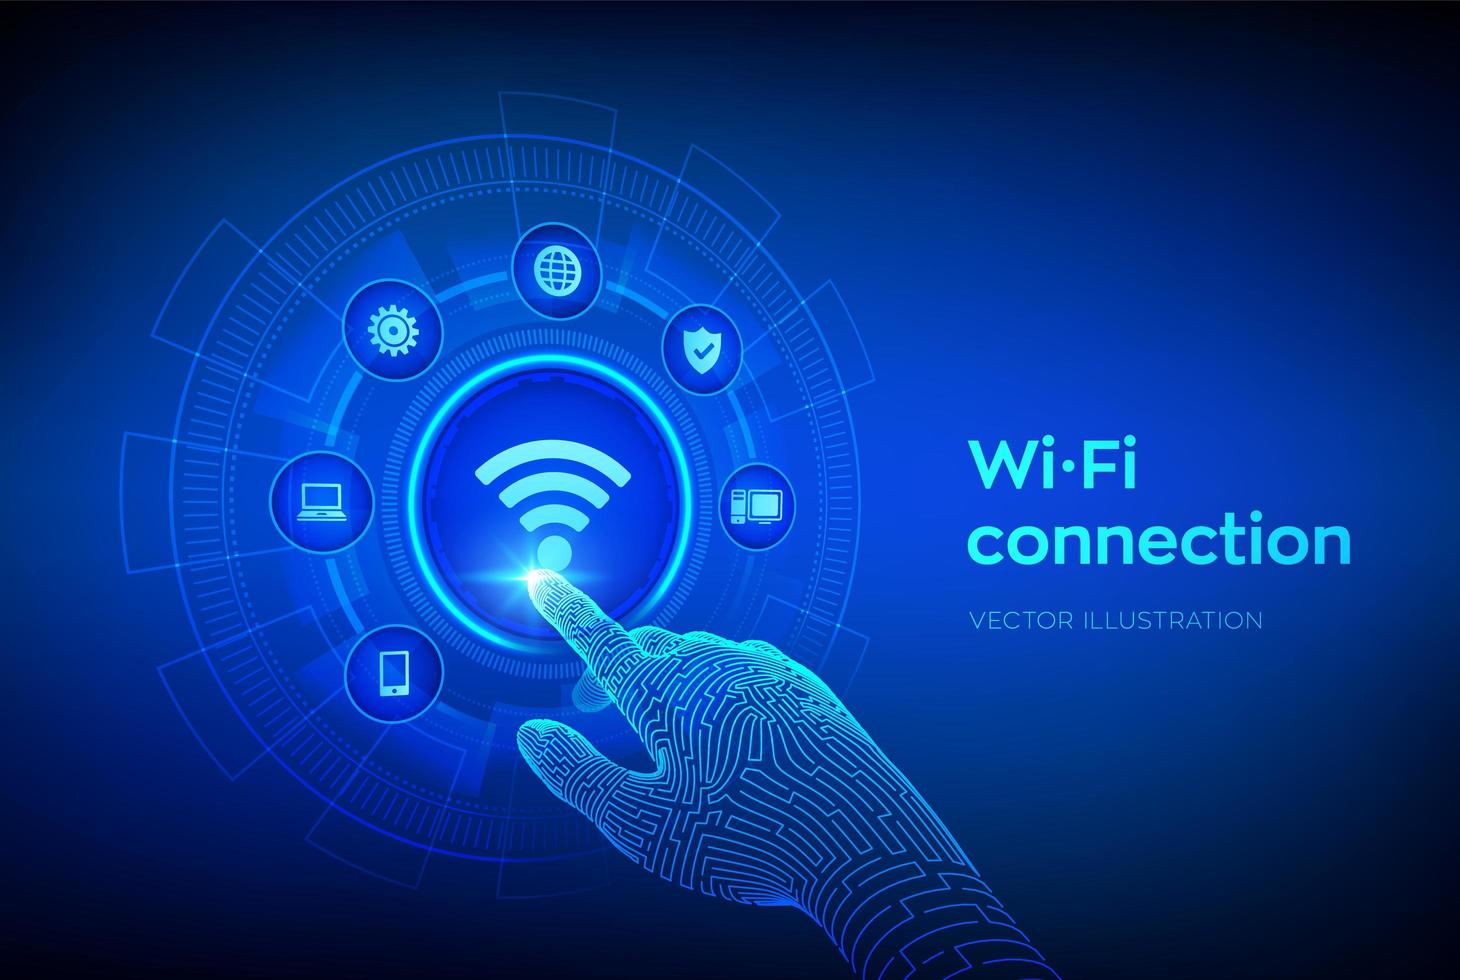 Wi-Fi trådlöst anslutningskoncept. gratis wifi-nätverk signal teknik vektor